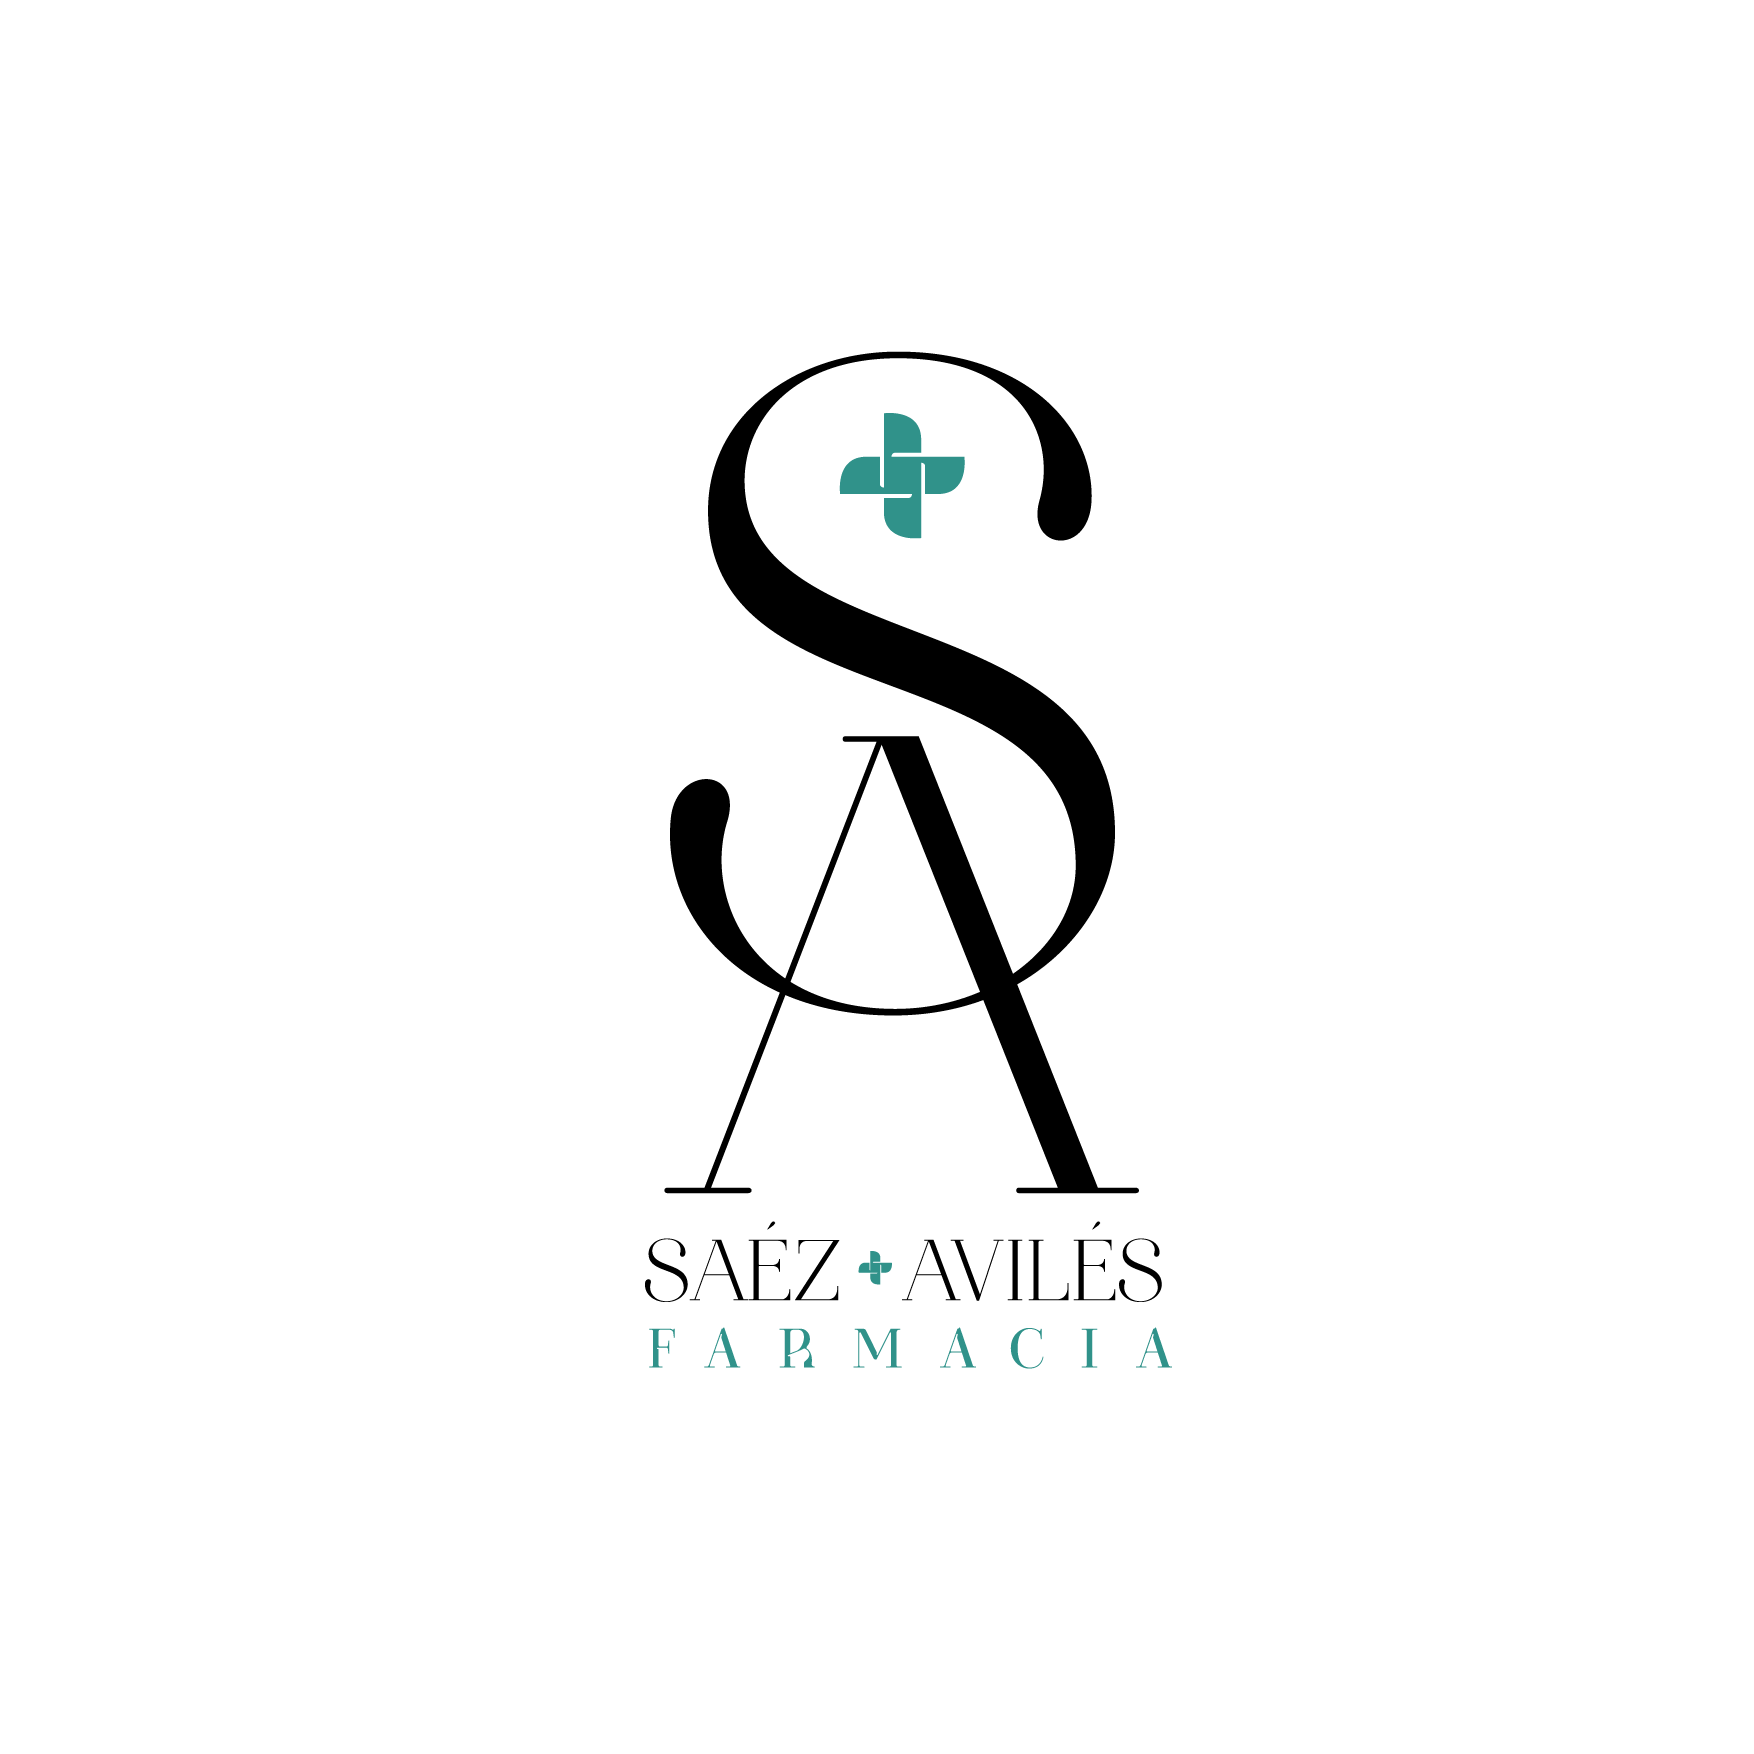 Farmacia Saez Aviles - Farmacia en Cartagena Logo